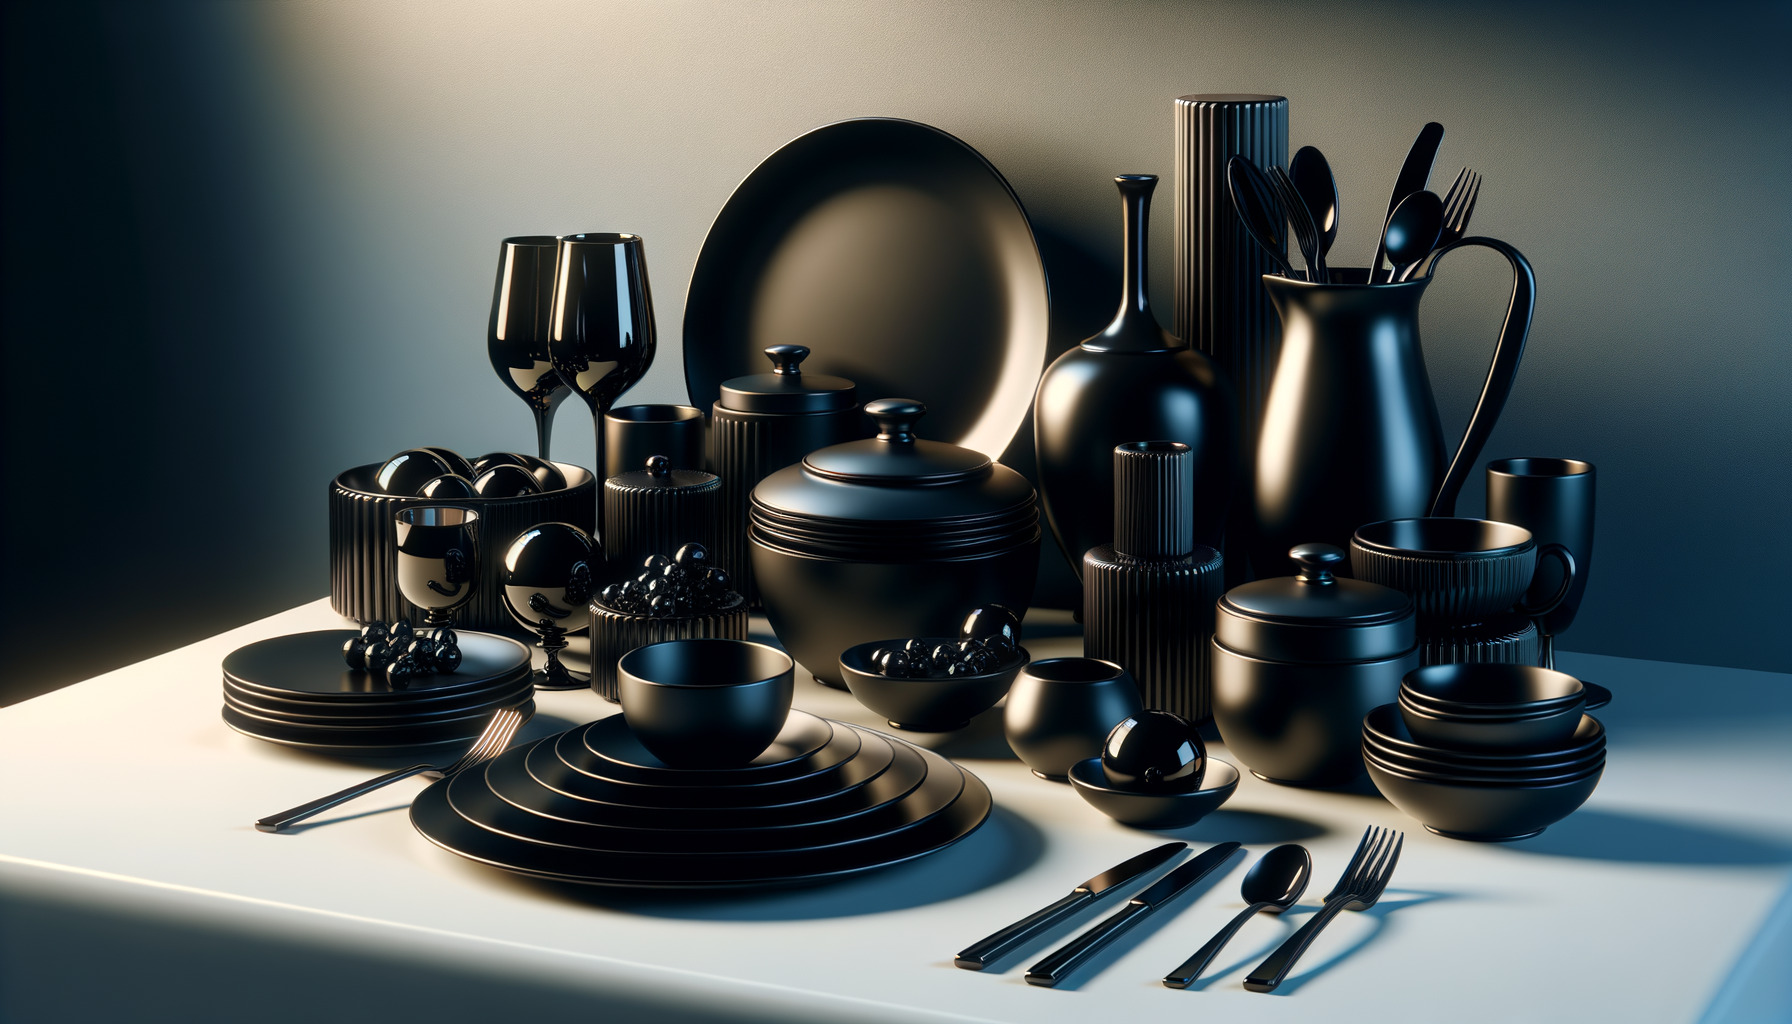 Eleganz pur: Schwarzes Geschirr für stilvolle Tischmomente